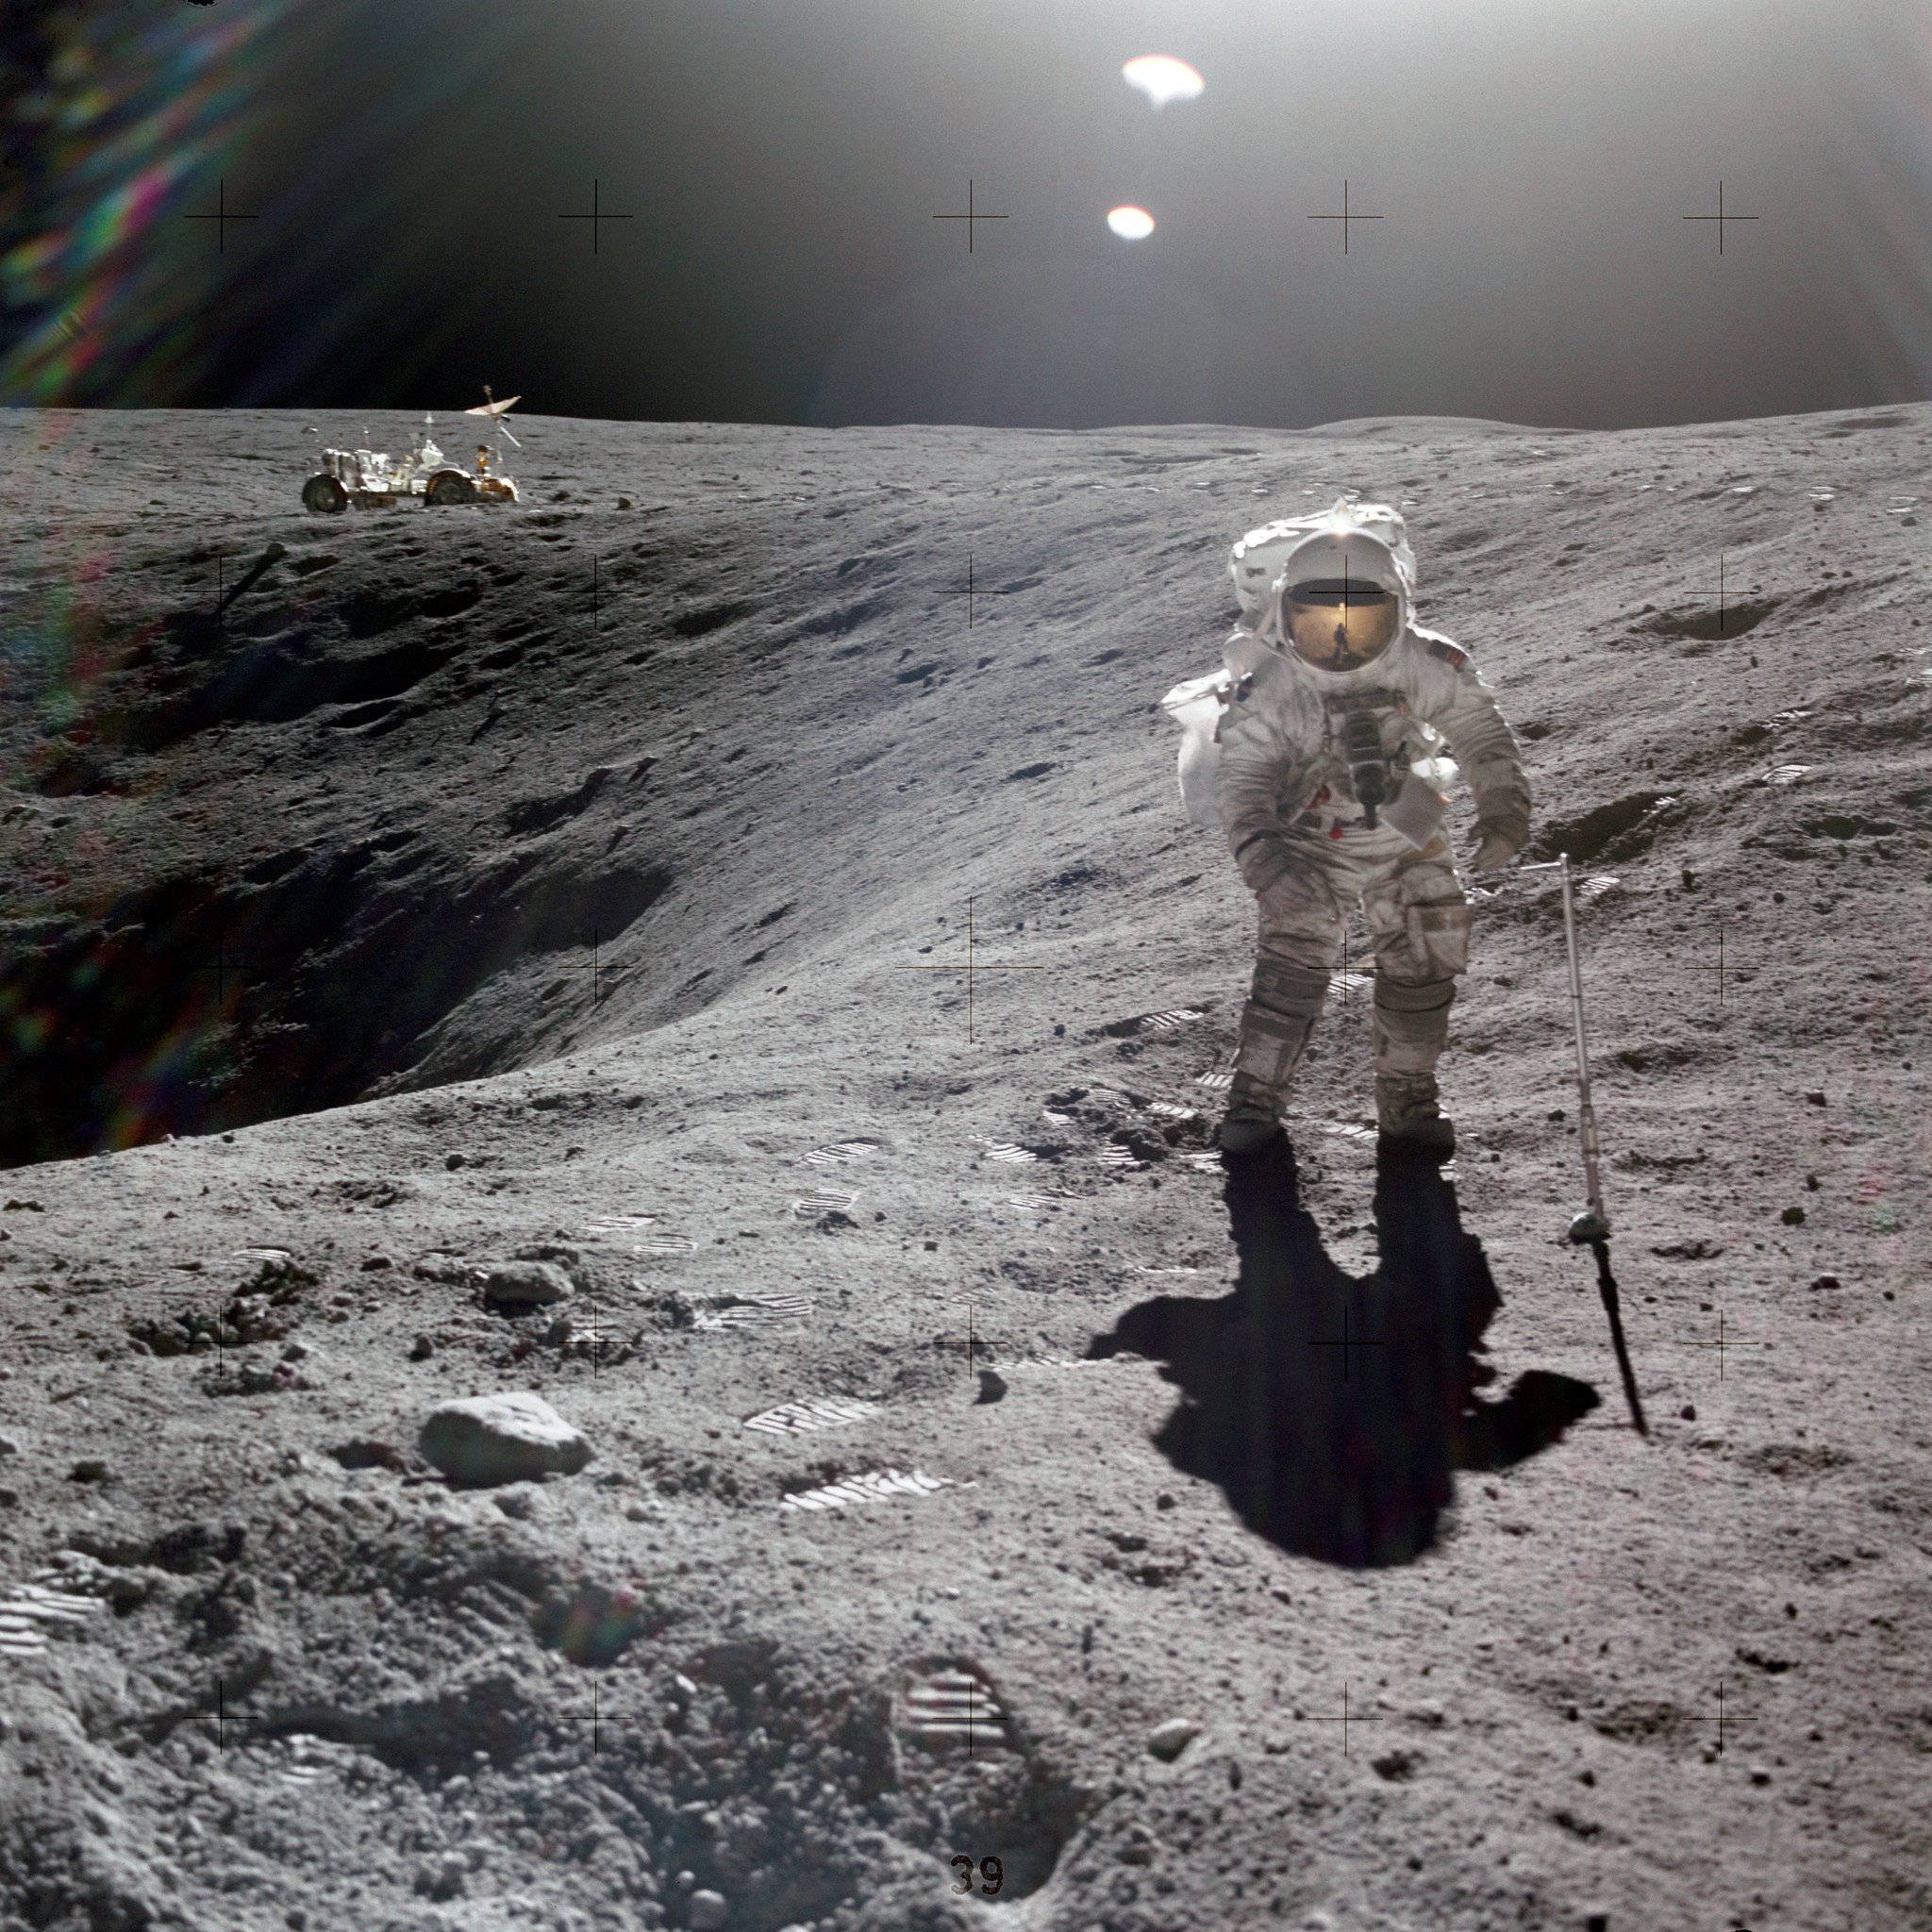 Bild NASA: Astronaut Charles M. Duke Jr